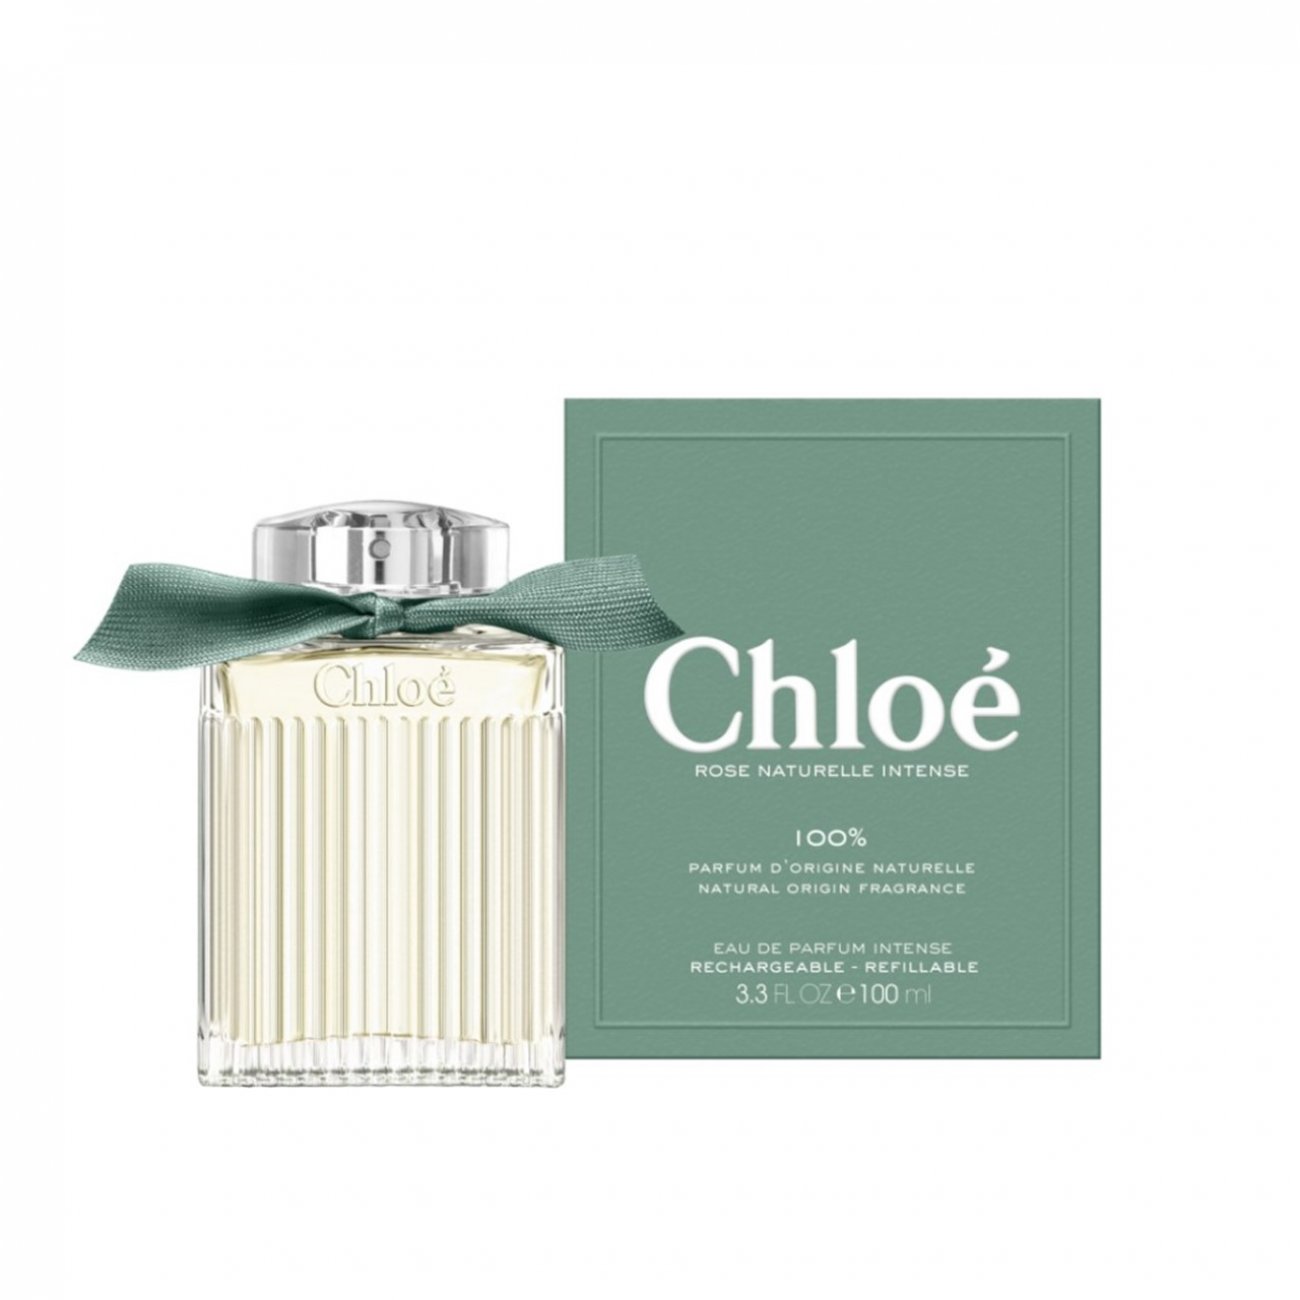 Buy Chloé Rose Naturelle Intense Eau De Parfum Refill 150ml · Australia